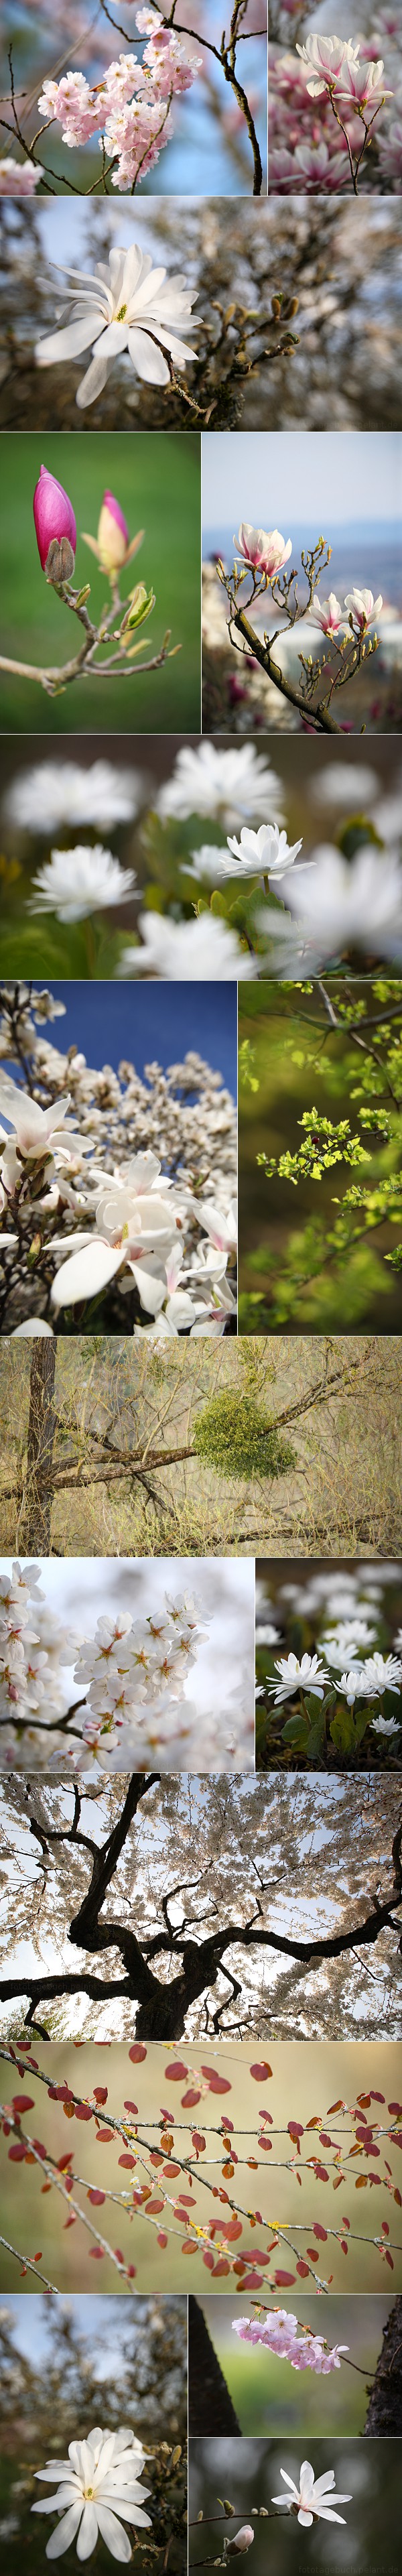 Bildzusammenstellung: Magnolien- und Zierkischblte im Botanischen Garten Tbingen